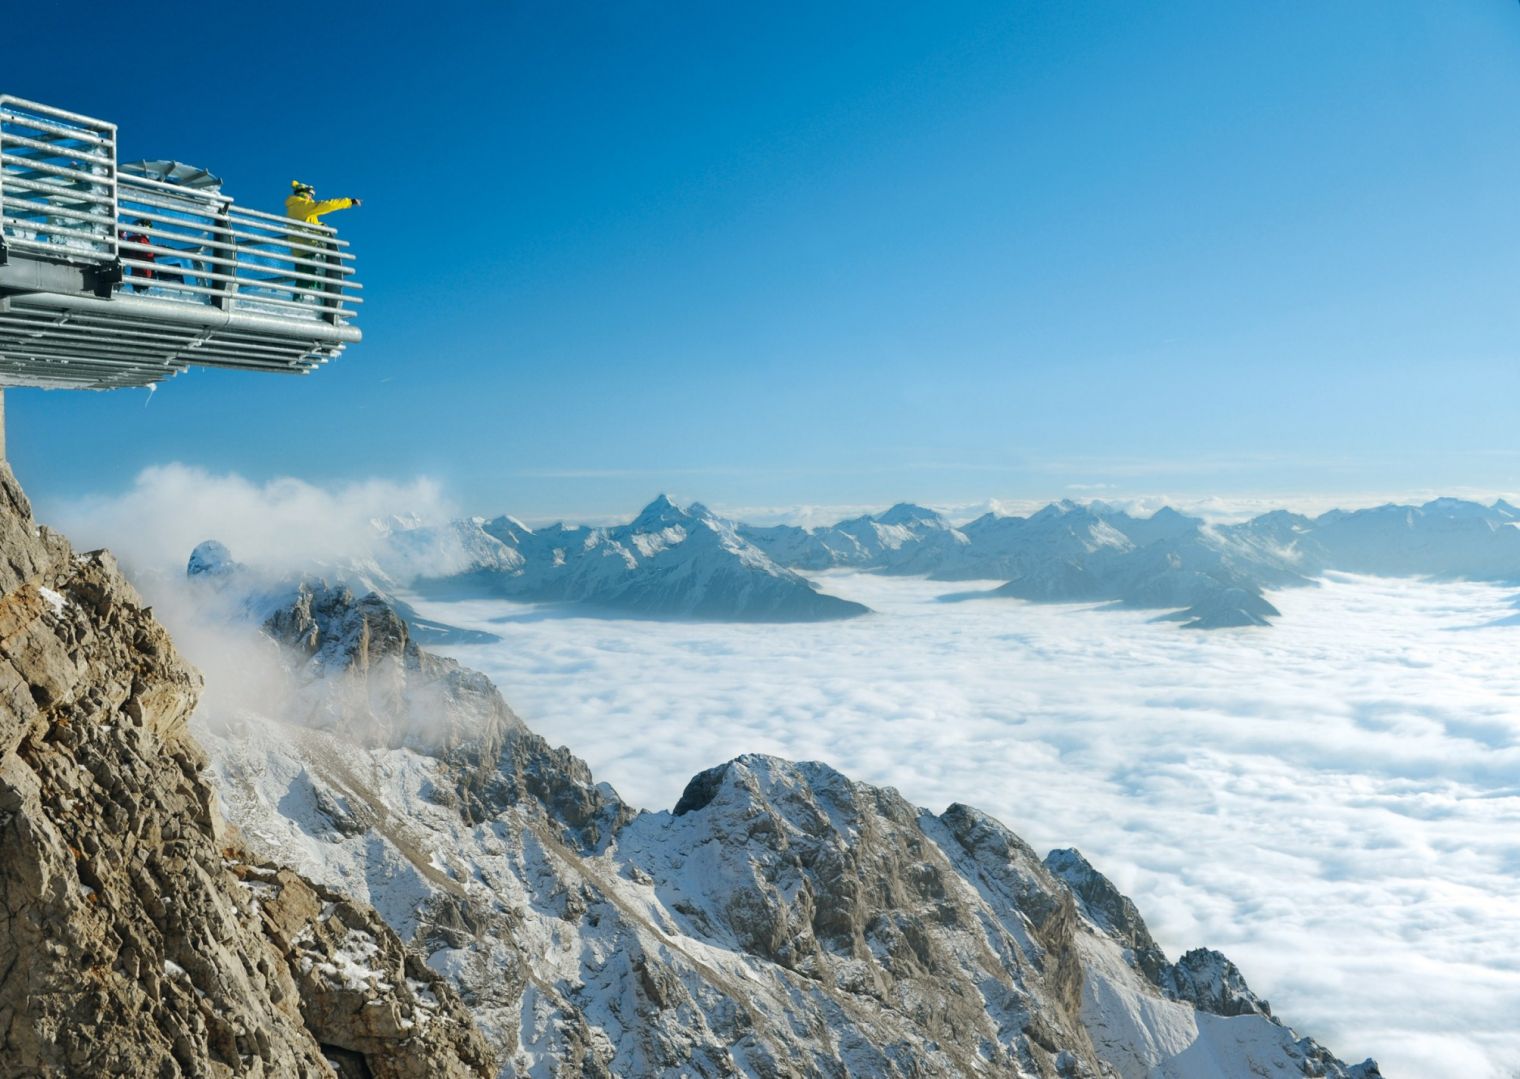 Dachstein Stairway in Austria 